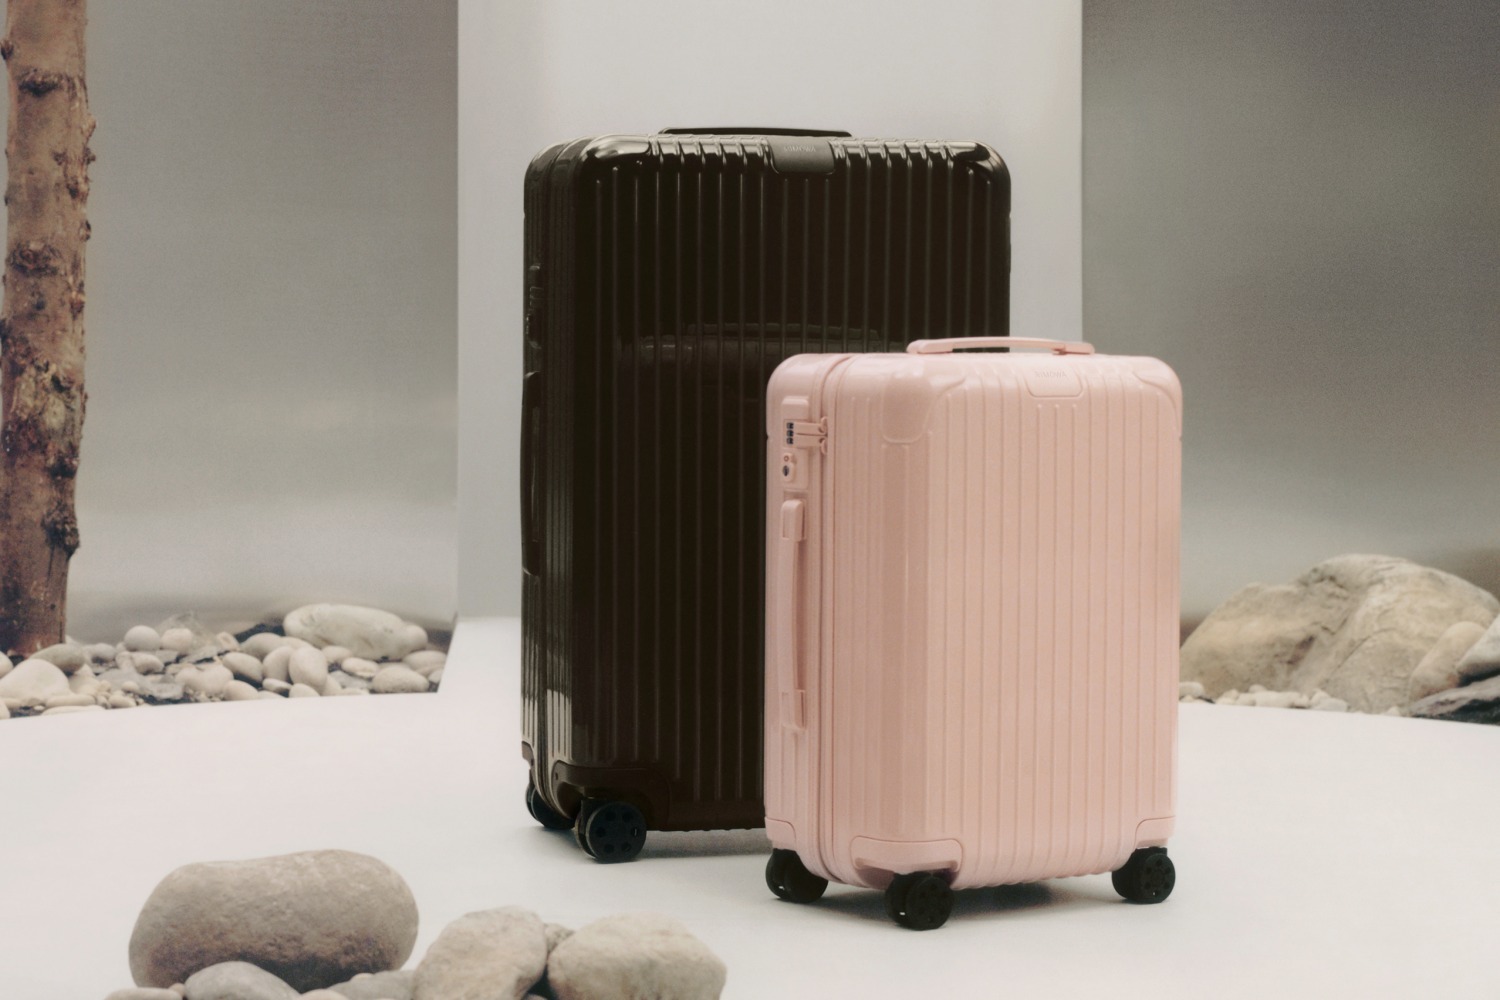 リモワのスーツケース「エッセンシャル」新色、パステルピンク 